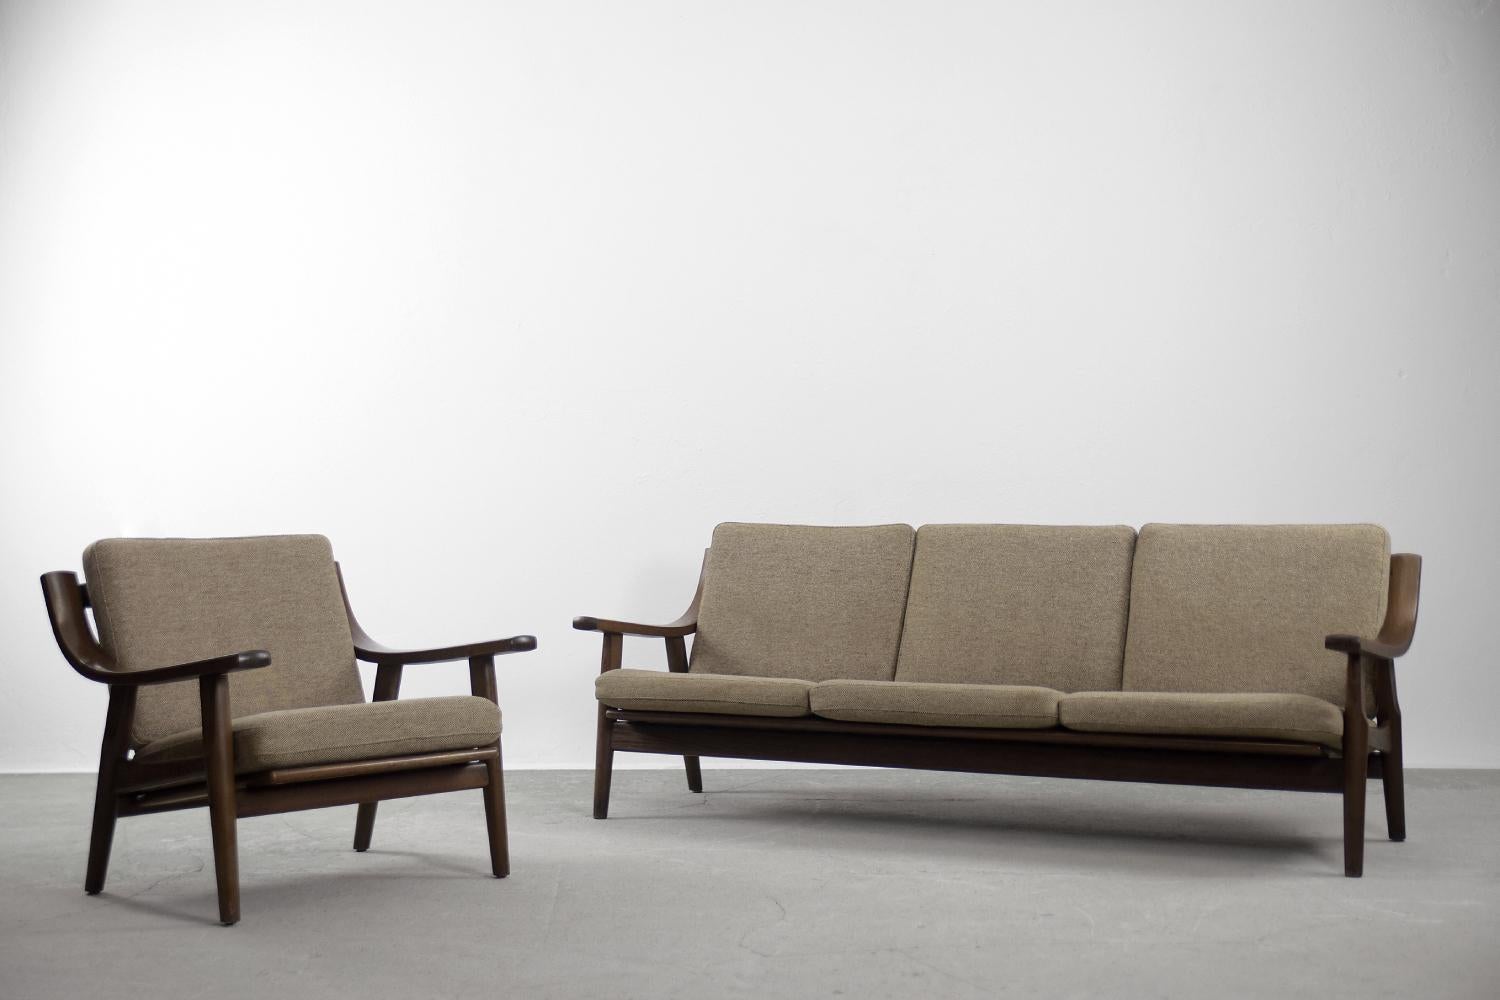 Dieses elegante Lounge-Set besteht aus einem dreisitzigen Sofa und einem Sessel. Das Set wurde in den 1960er Jahren von Hans J. Wegner für das Getama Gedsted in Dänemark entworfen. Dies ist das Modell GE-530. Der Rahmen ist aus massivem Eichenholz